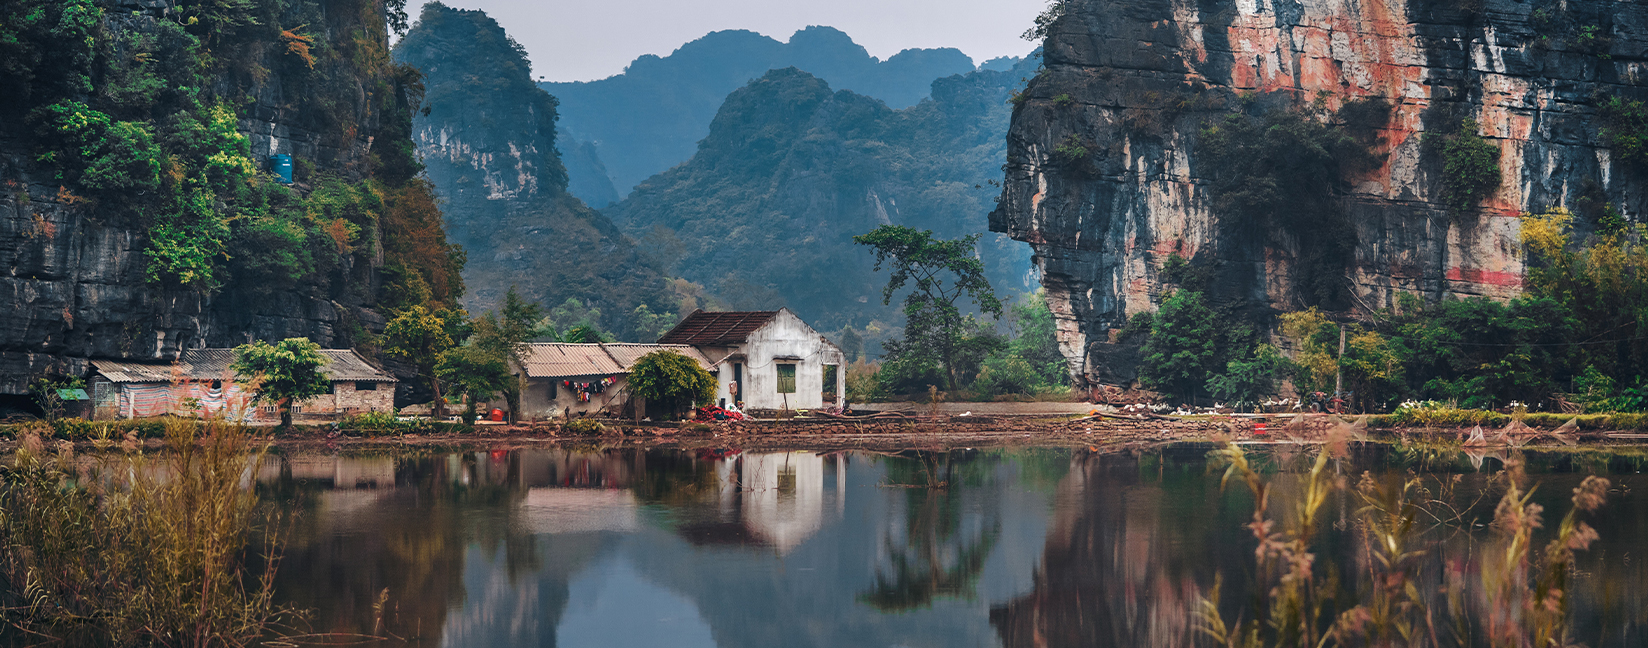 Vietnam Culture Tours